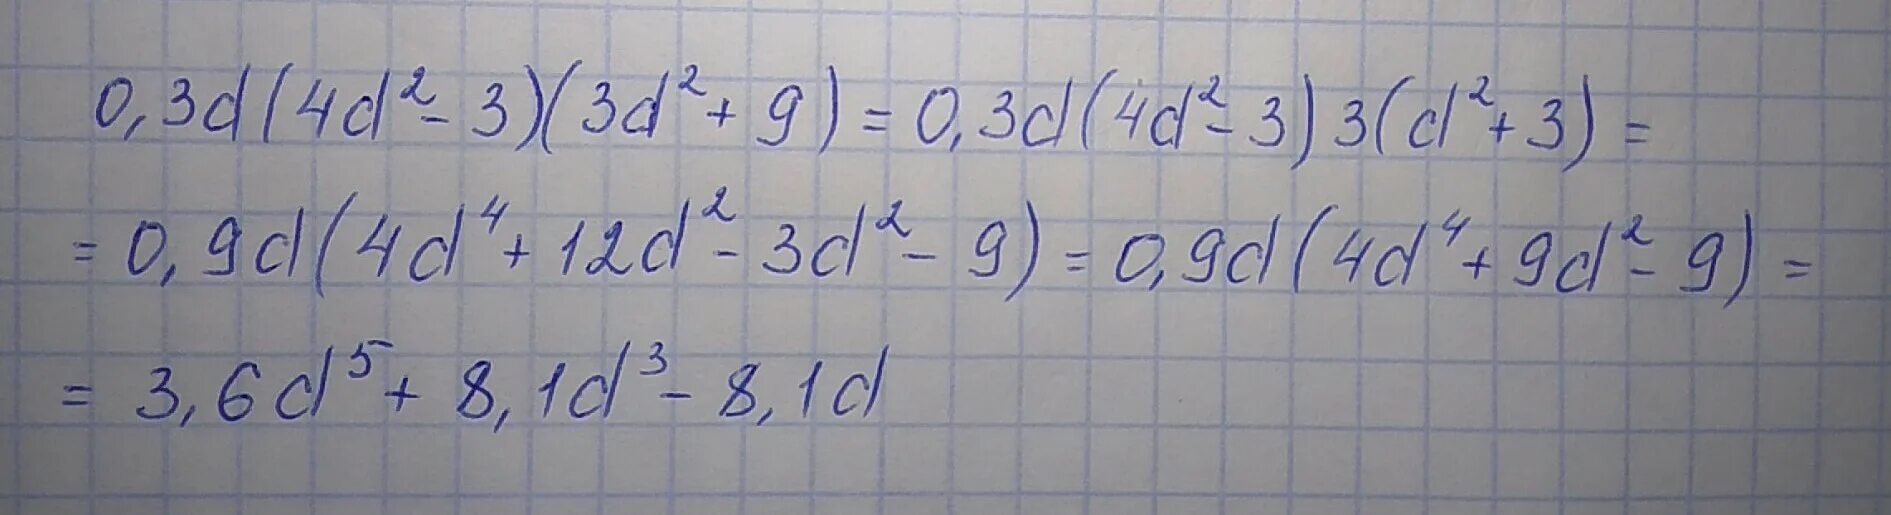 Выполни действия 0 5. Выполни действия 0,1d(3d^2 -3)(3d^2 +6). Выполните действия 0,4d(3d 2-3)(3d 2+5). Выполни действия 0,2d(4d2-3)(3d2+8). Выполните действие 0,4d(2d^2-3)(3d^2+6).